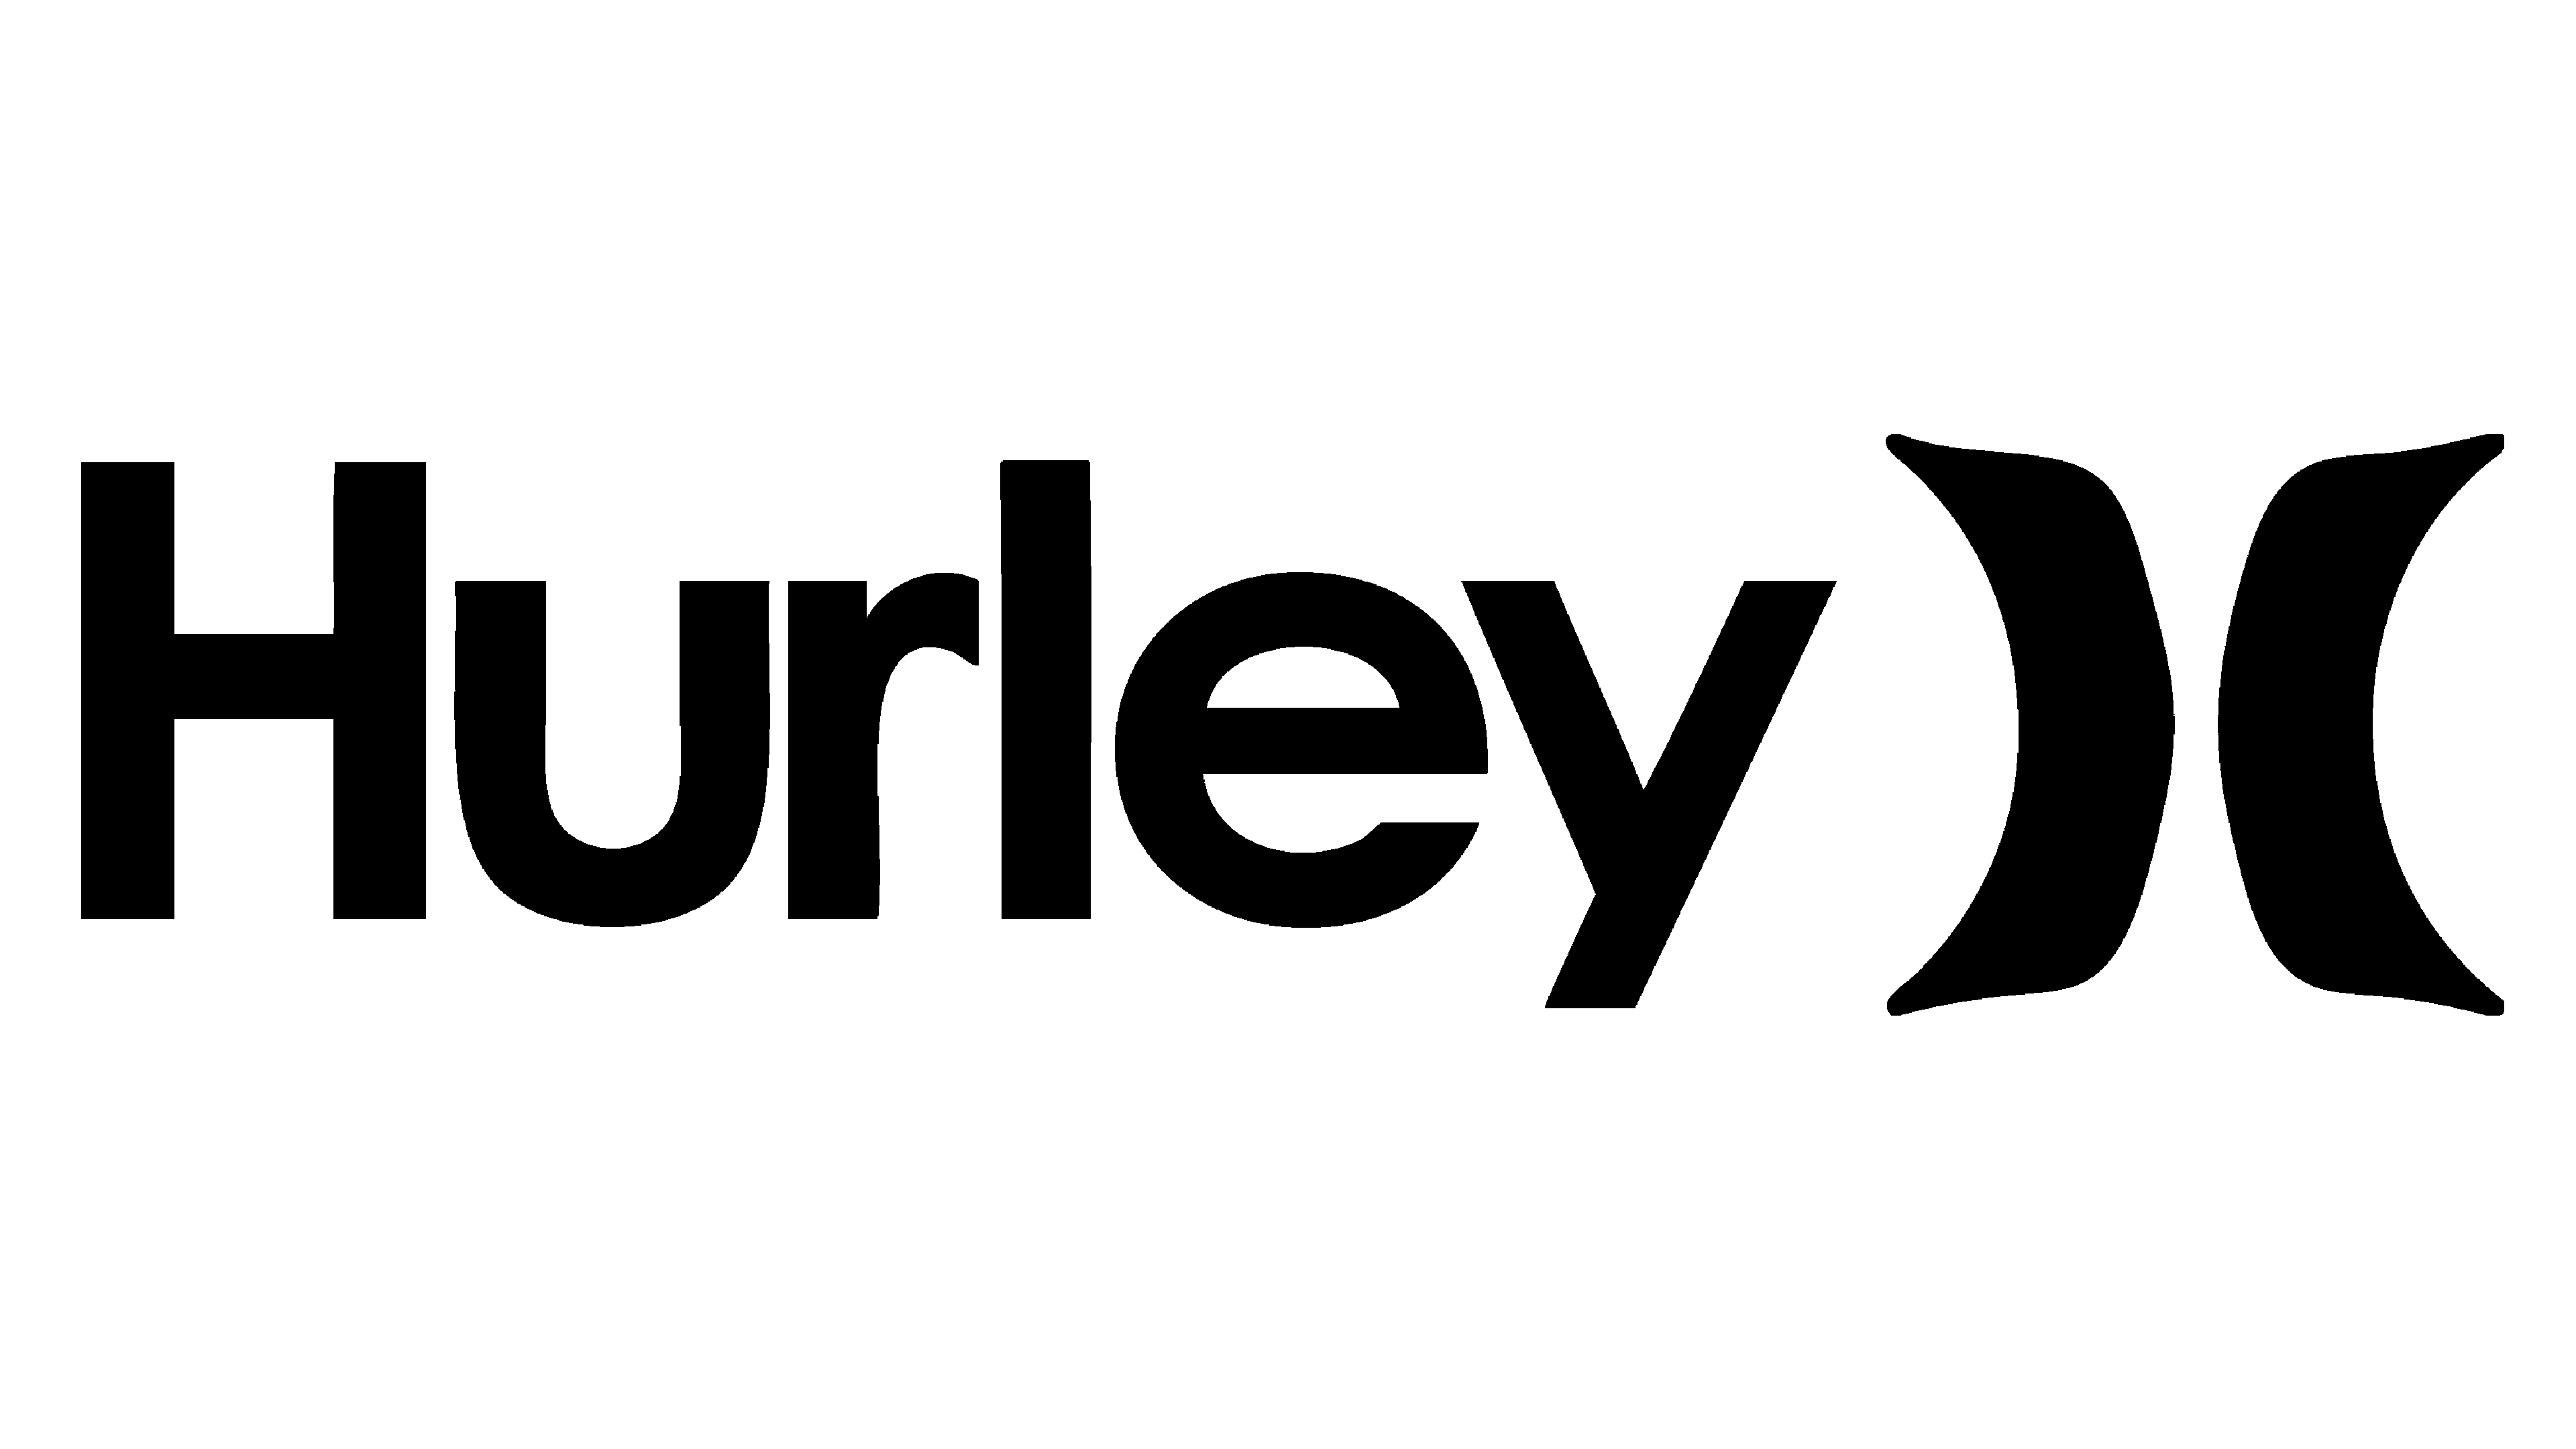 Hurley Coupon Code